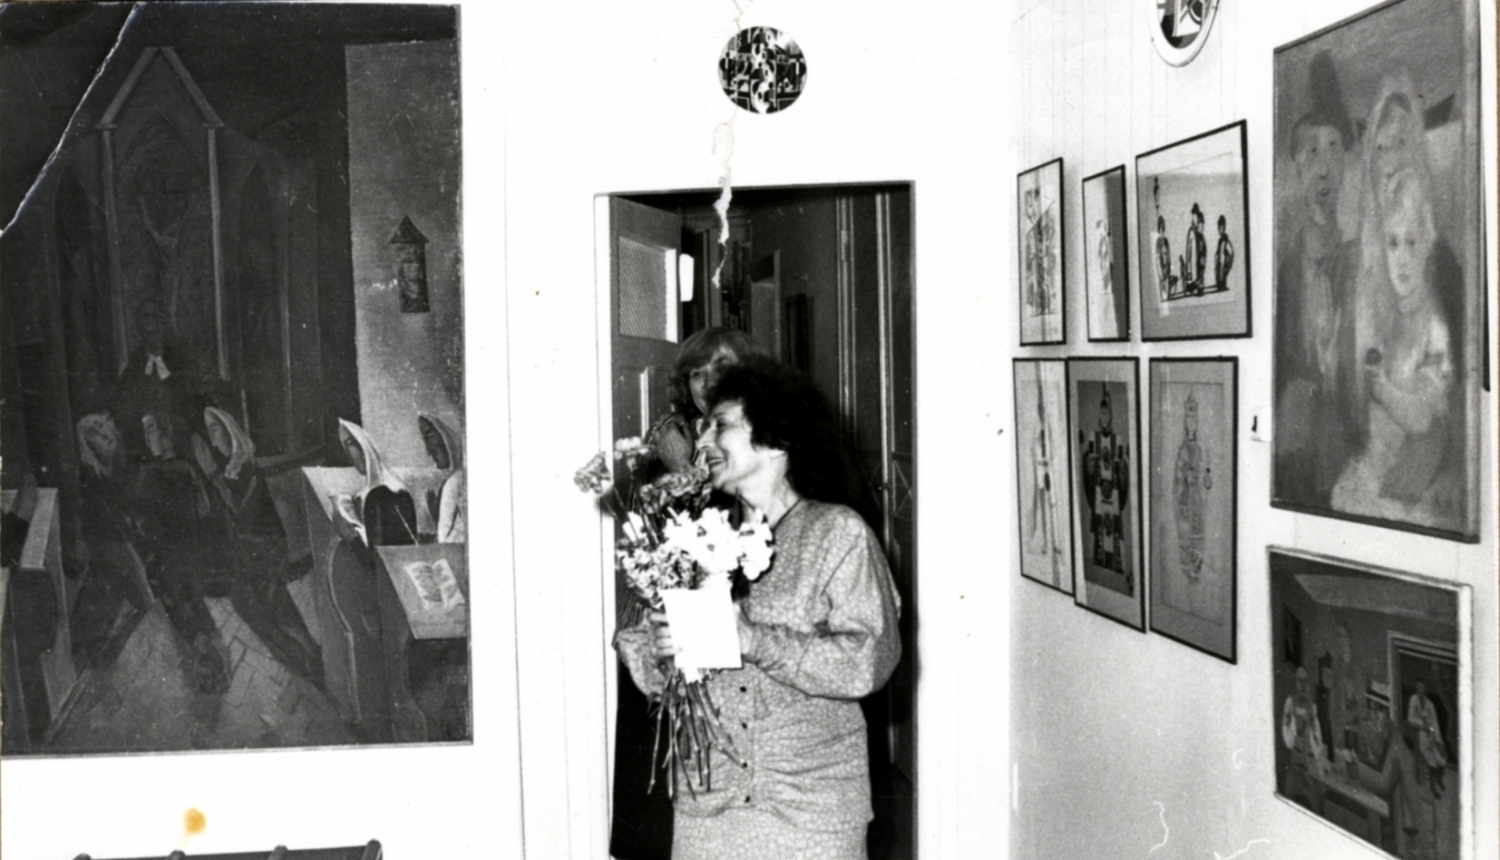 Romana Sutas memoriālās istabas atklāšana Elizabetes ielas dzīvoklī (tagadējā muzejā). 1987. Fotogrāfija. SBM kolekcija. Foto: Harijs Burmeistars